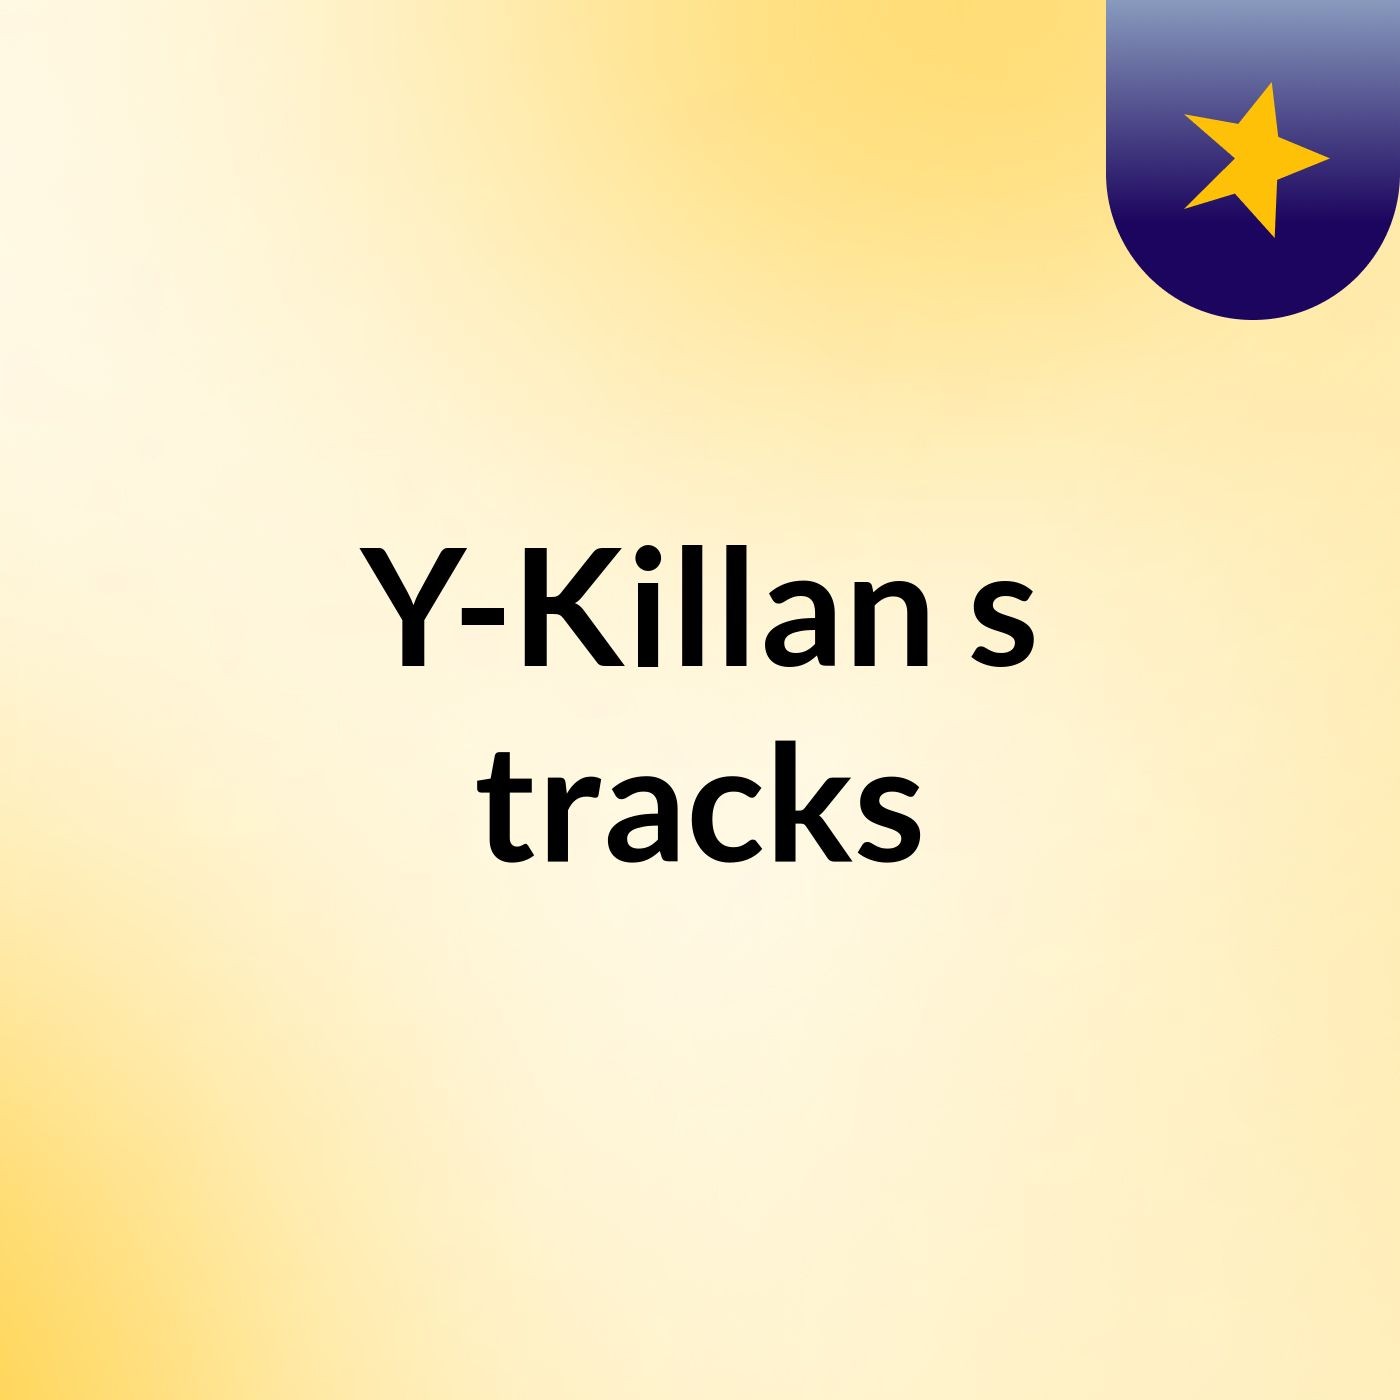 Y-Killan's tracks